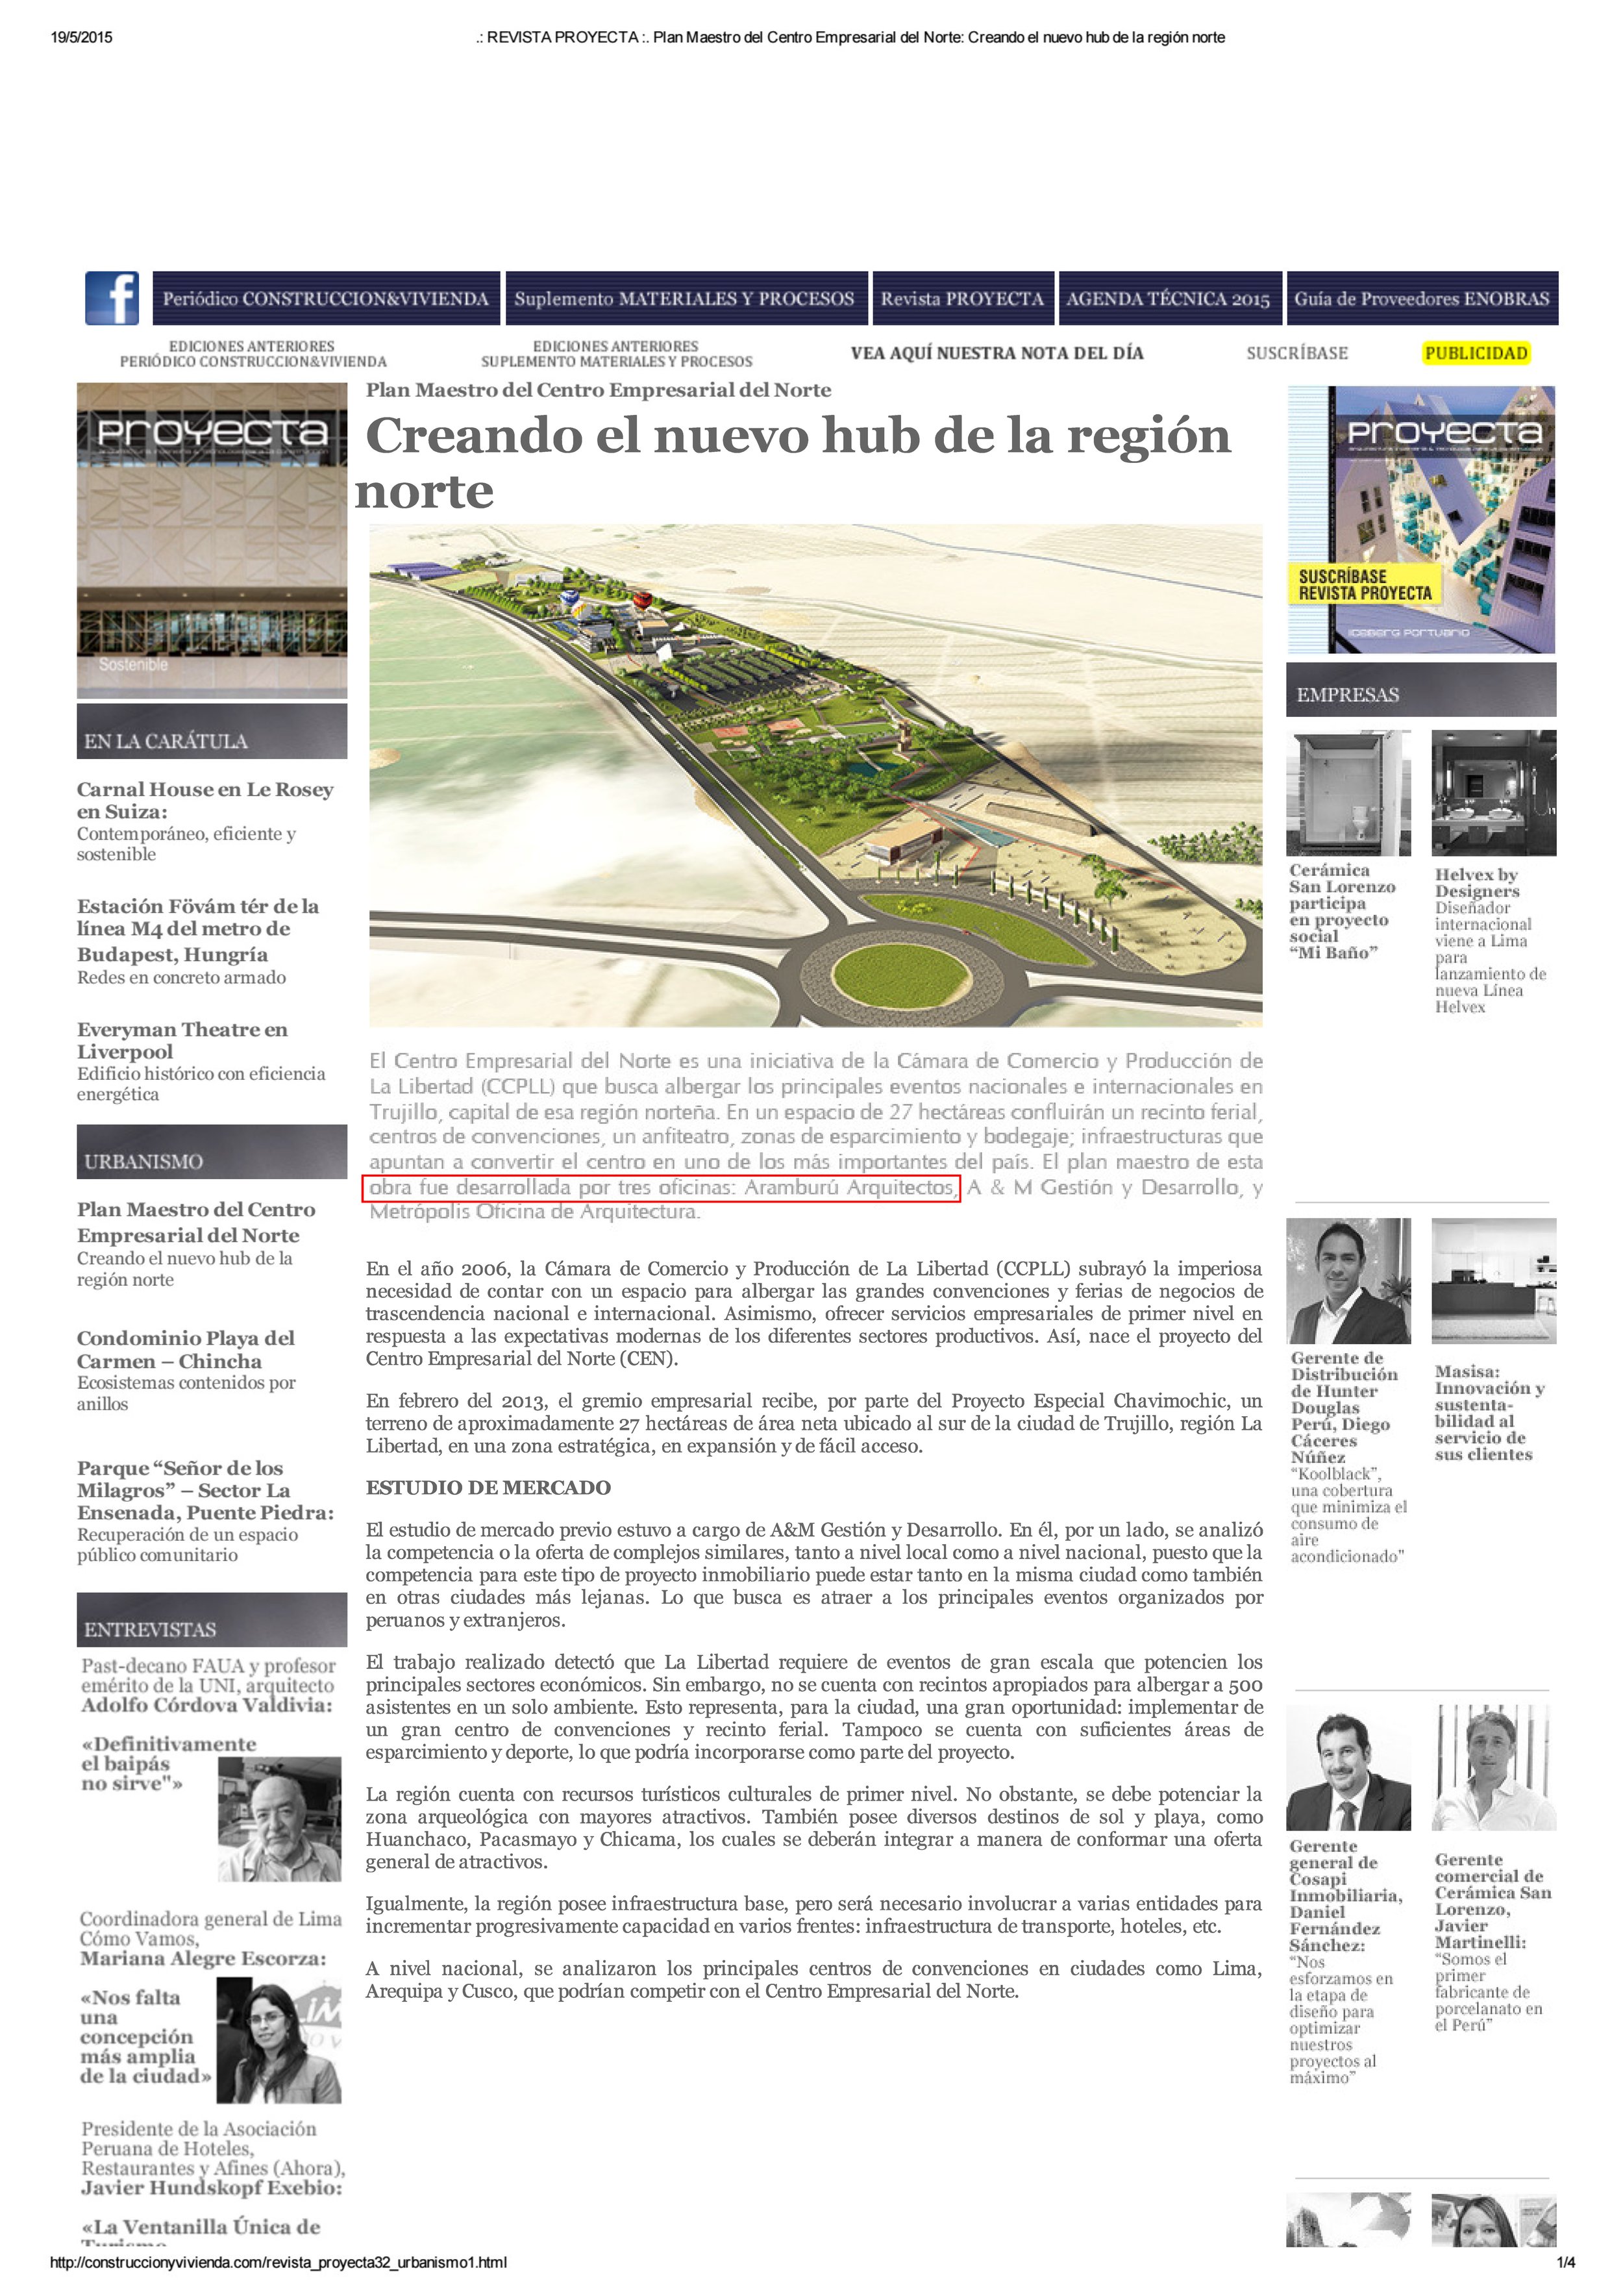 PUBLICACIÓN REPORTAJE TRUJILLO Revista Proyecta_Página_1.jpg